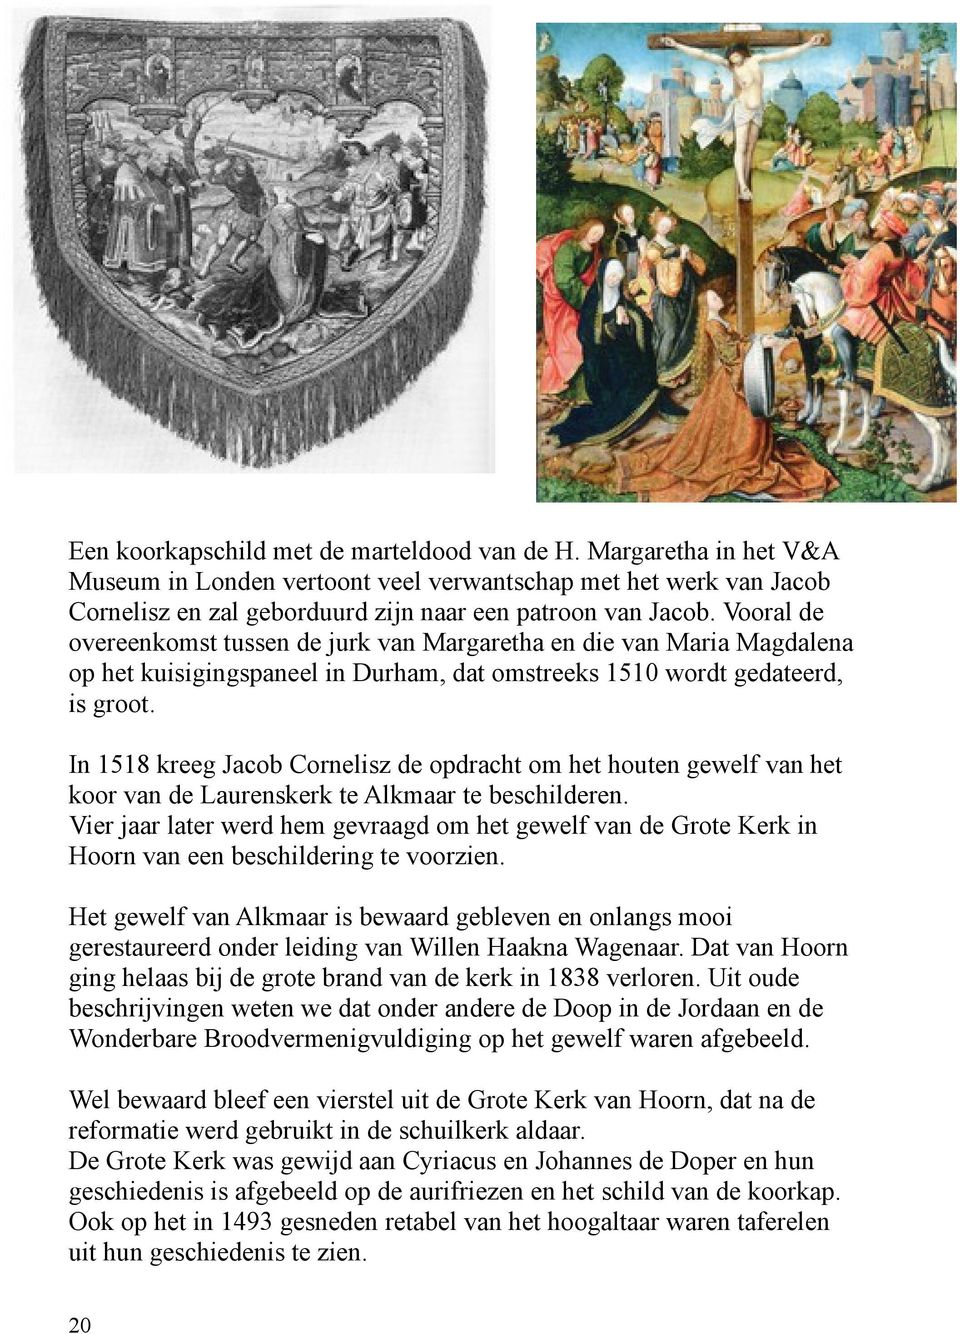 In 1518 kreeg Jacob Cornelisz de opdracht om het houten gewelf van het koor van de Laurenskerk te Alkmaar te beschilderen.